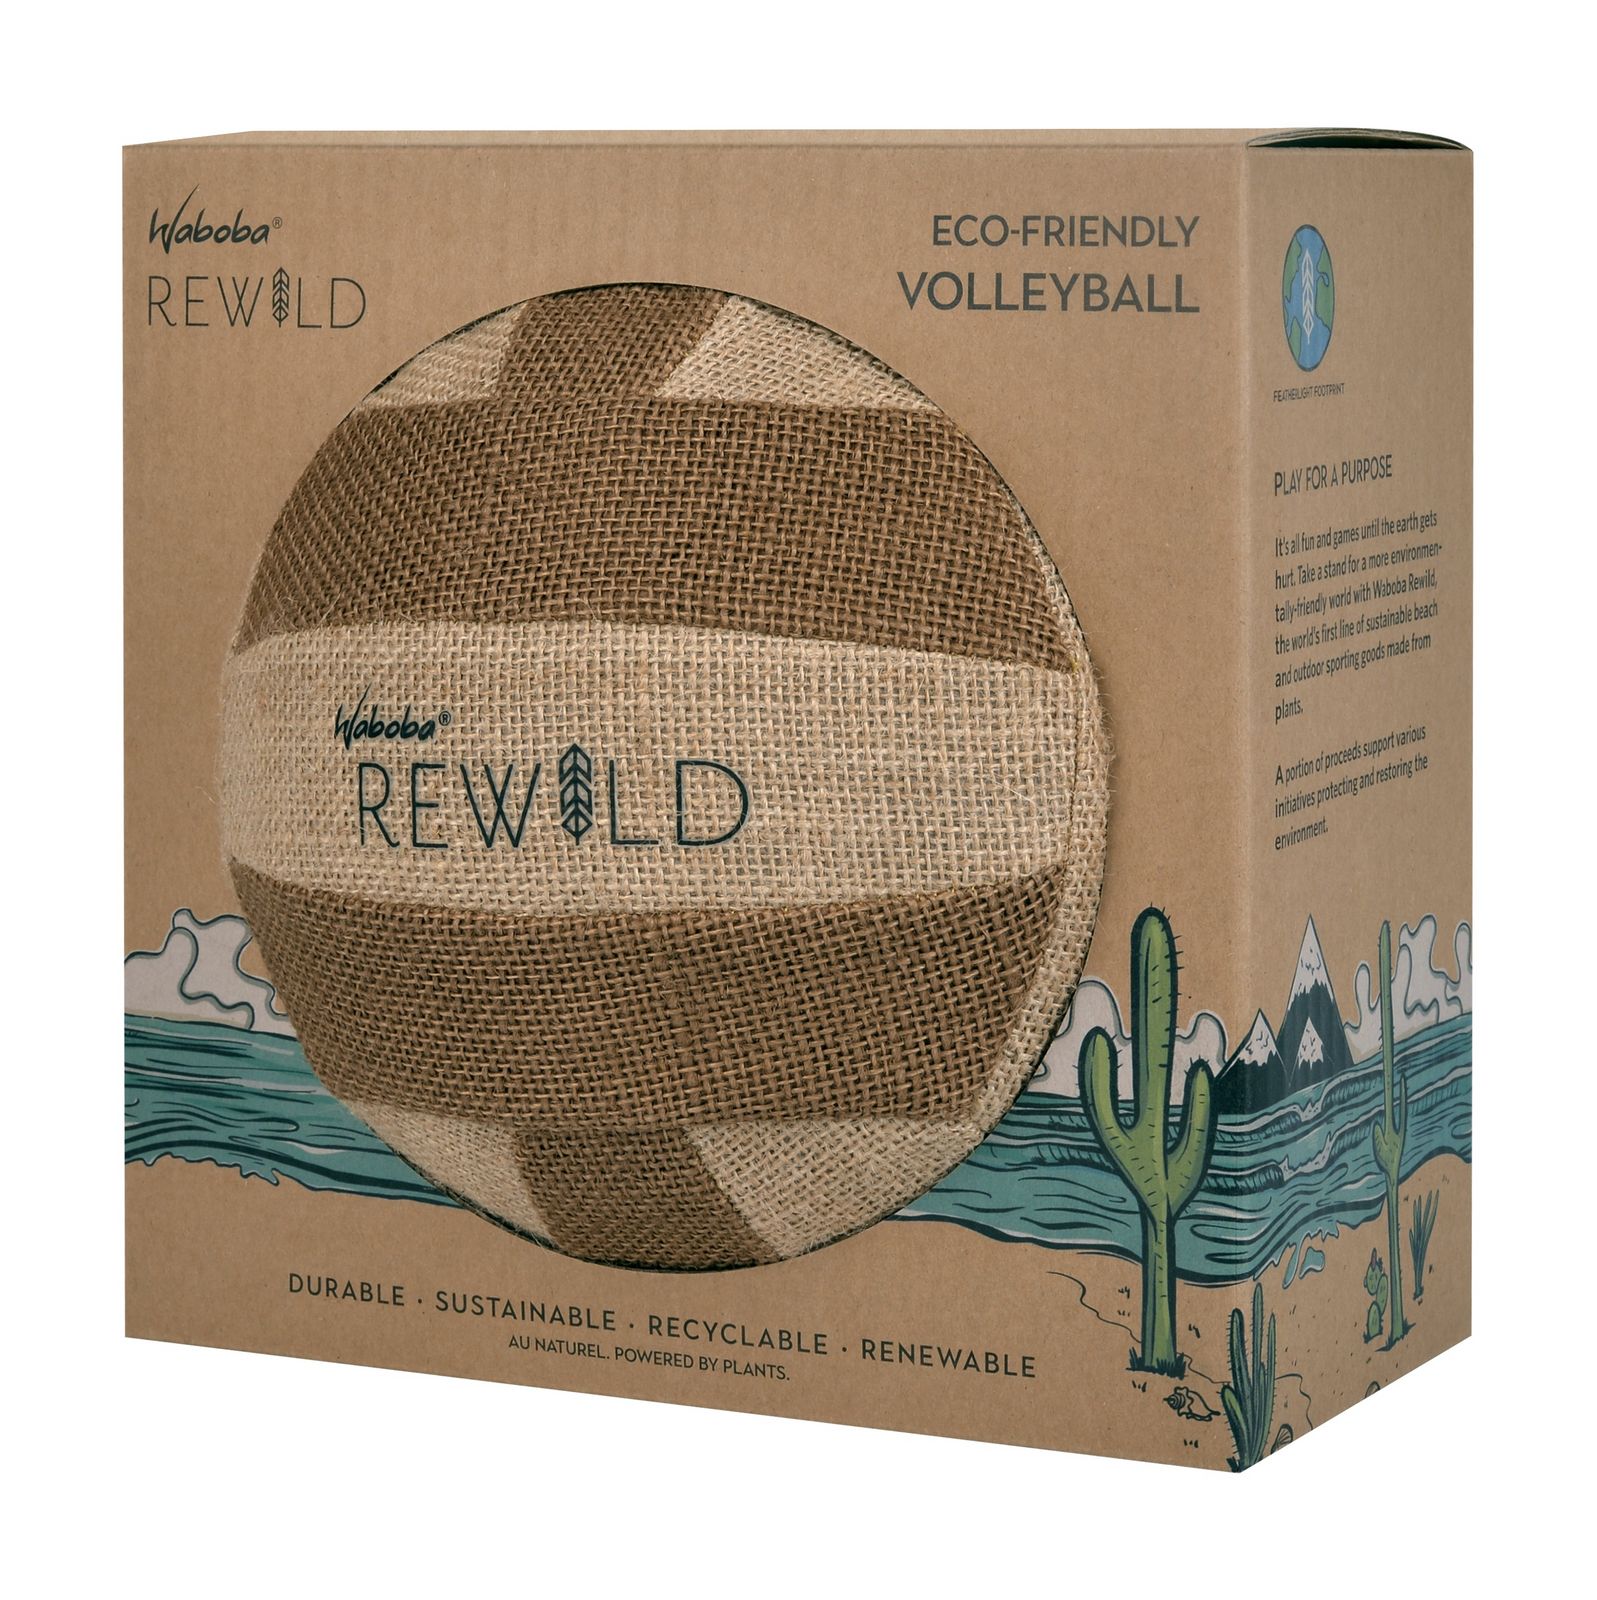 Waboba REWILD Volleyball-/bilder/big/waboba_rewild_volleyball_package_side_1.jpg